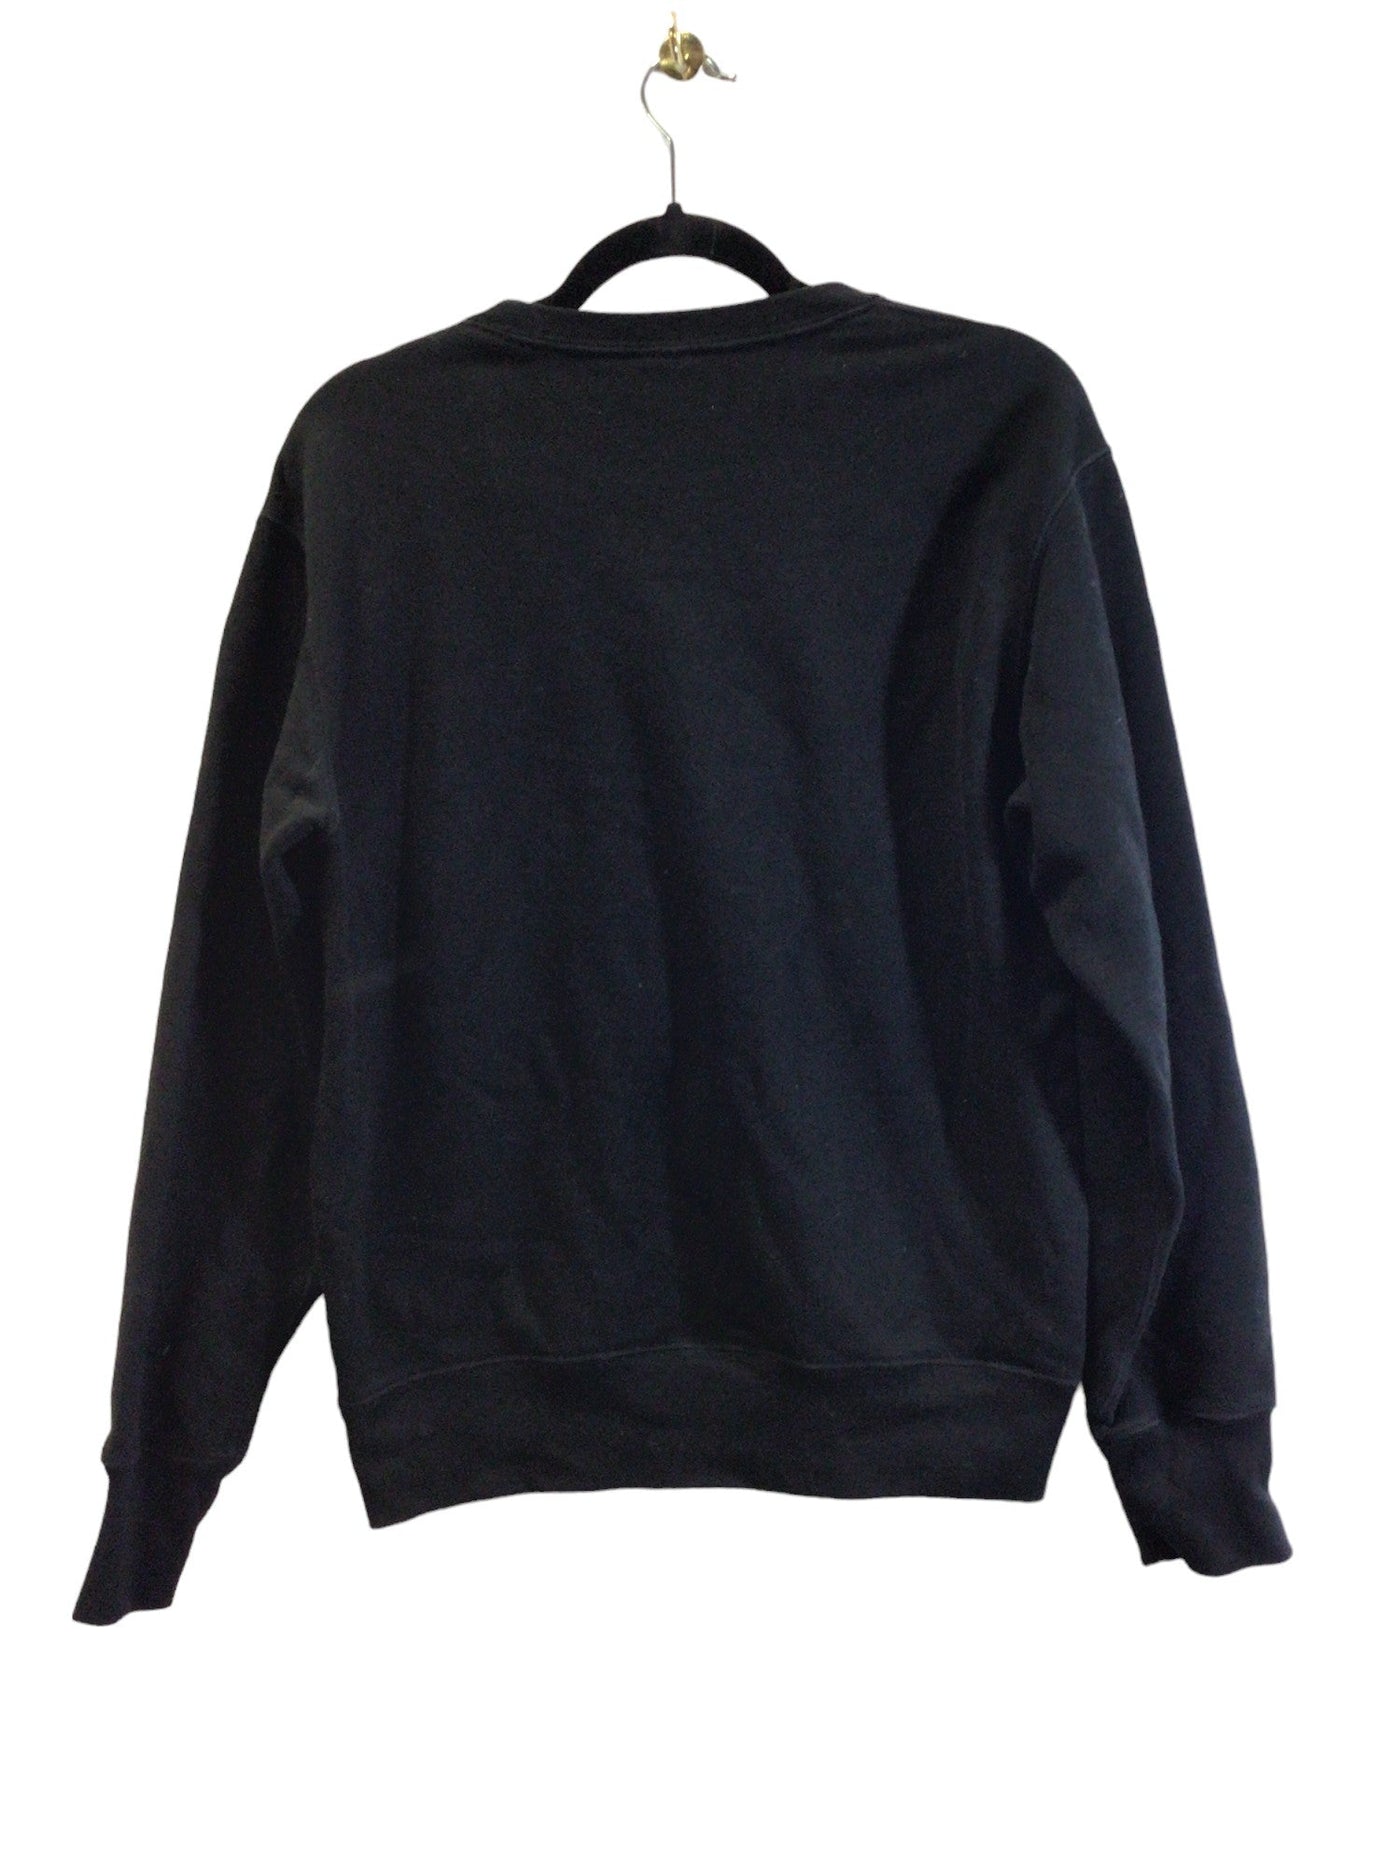 UNIQLO Women Sweaters Regular fit in Black - Size S | 9.99 $ KOOP